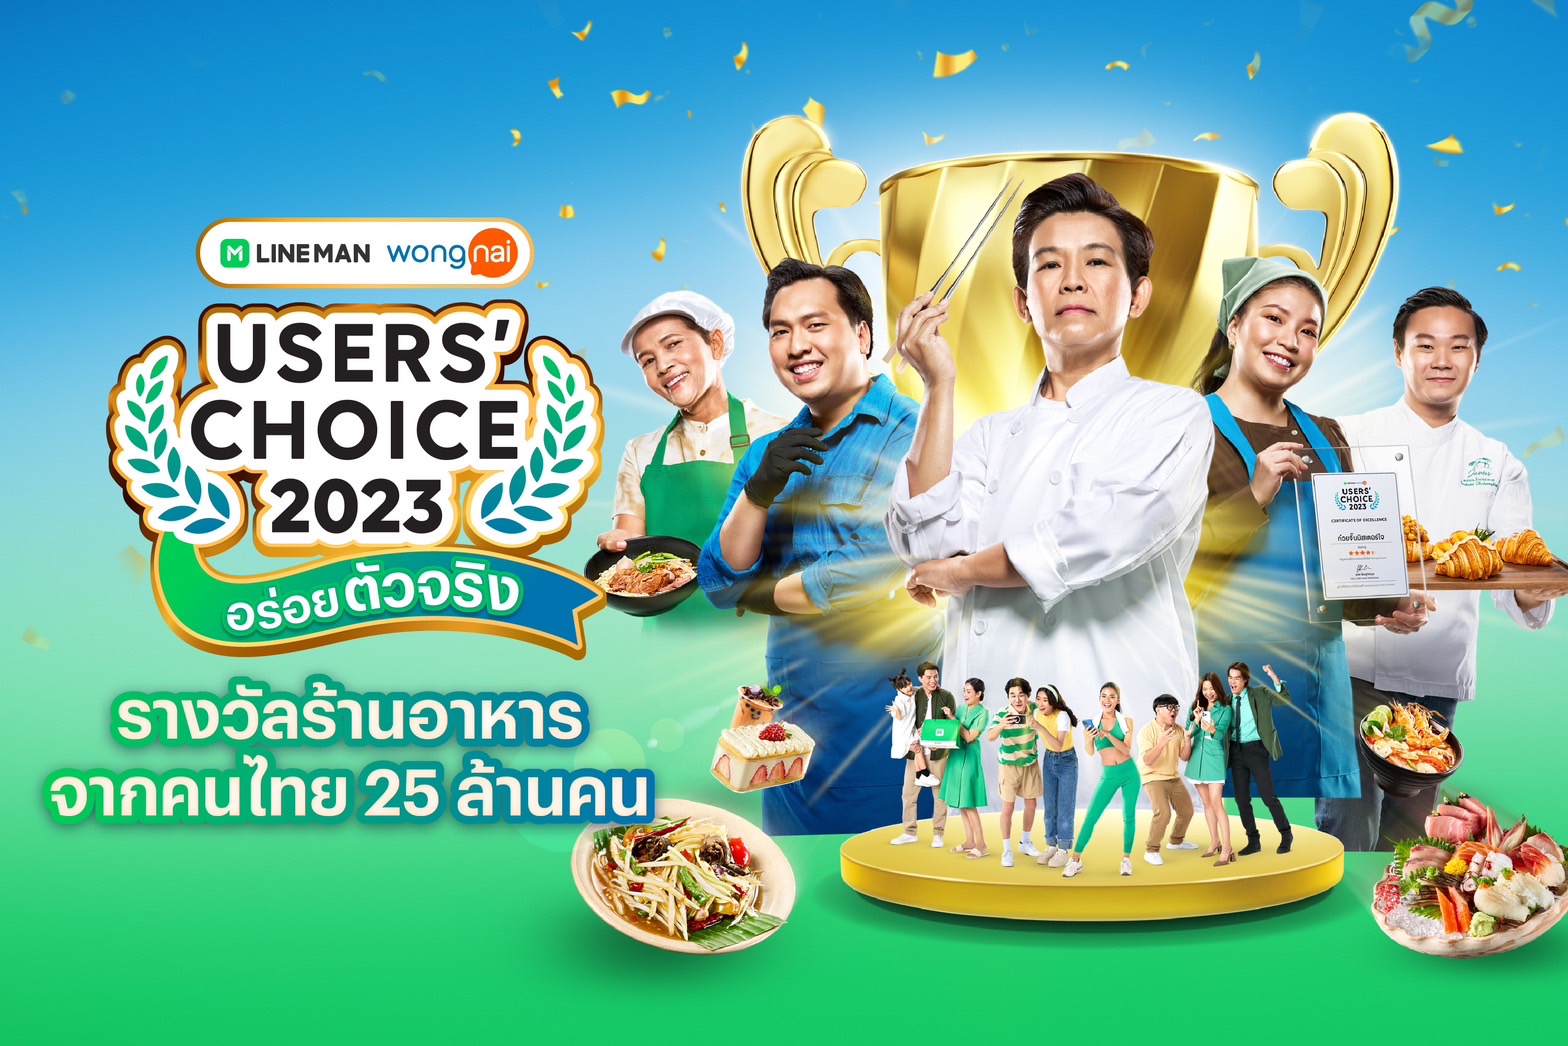 เปิดลายแทง 555 ร้านอร่อยเด็ดทั่วไทย รางวัล LINE MAN Wongnai Users’ Choice 2023 การันตีจากรีวิวผู้ใช้ที่กินจริง